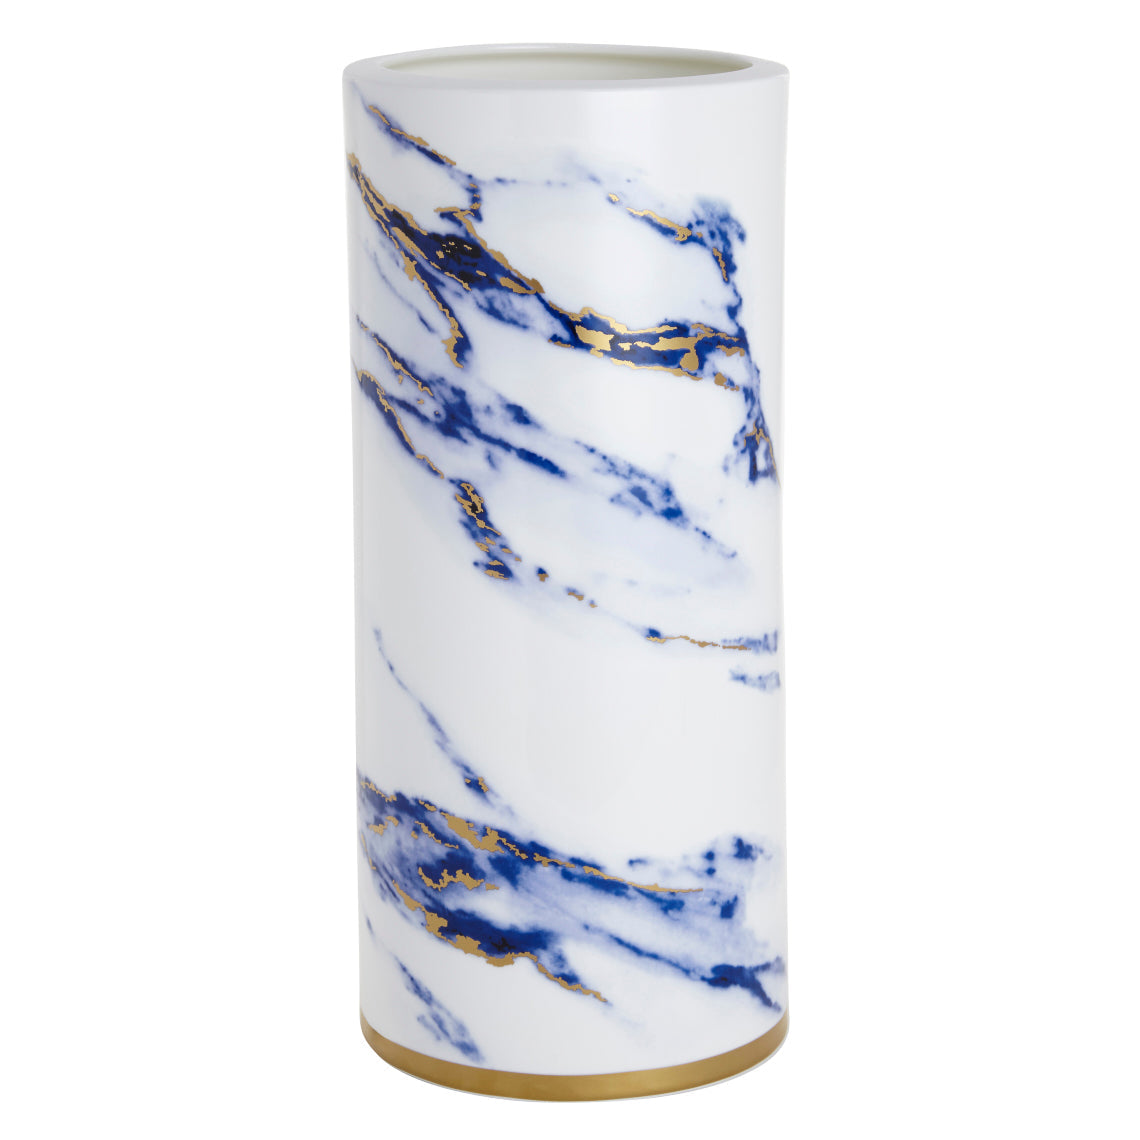 Prouna Marble Azure 14" Tall Vase White Background Photo